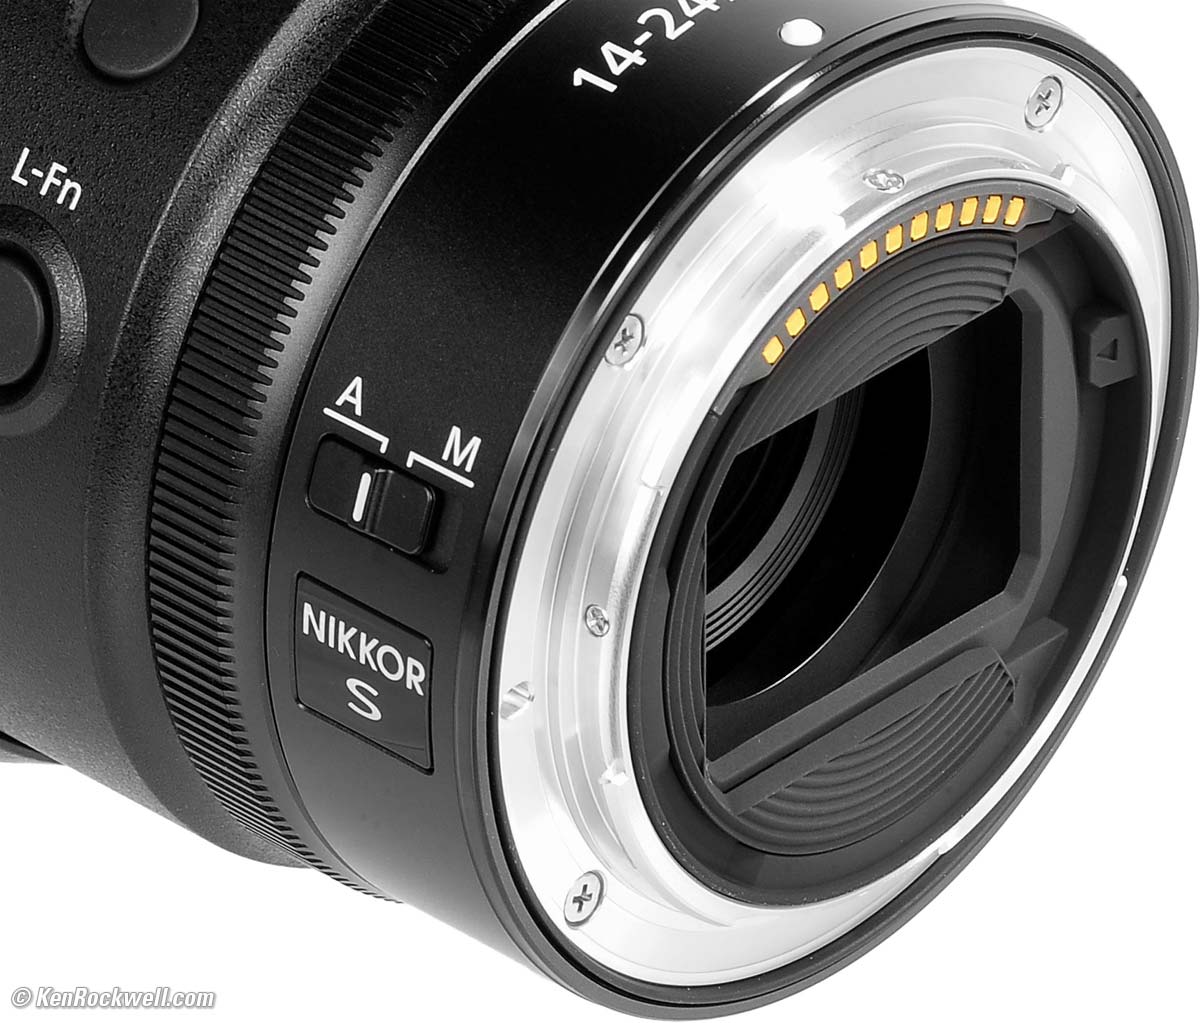 カメラ レンズ(ズーム) Nikon Z 14-24mm f/2.8 Review